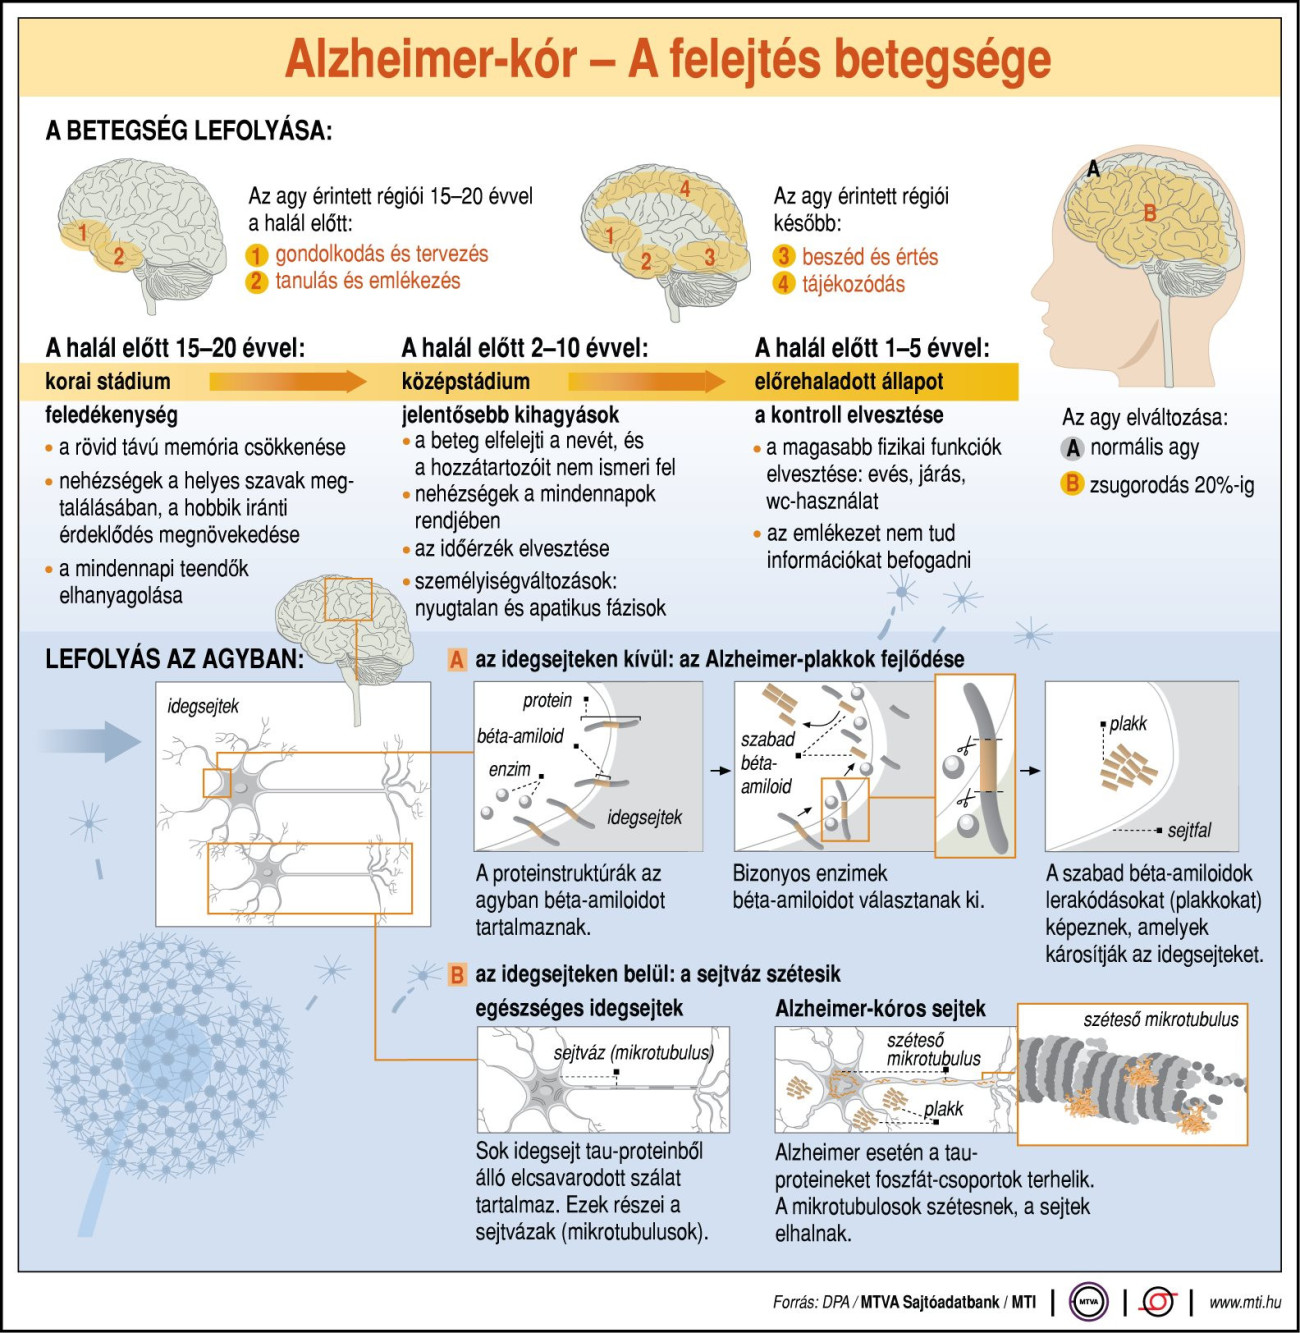 Alzheimer-kór: a felejtés betegsége. Forrás: MTI:G0462